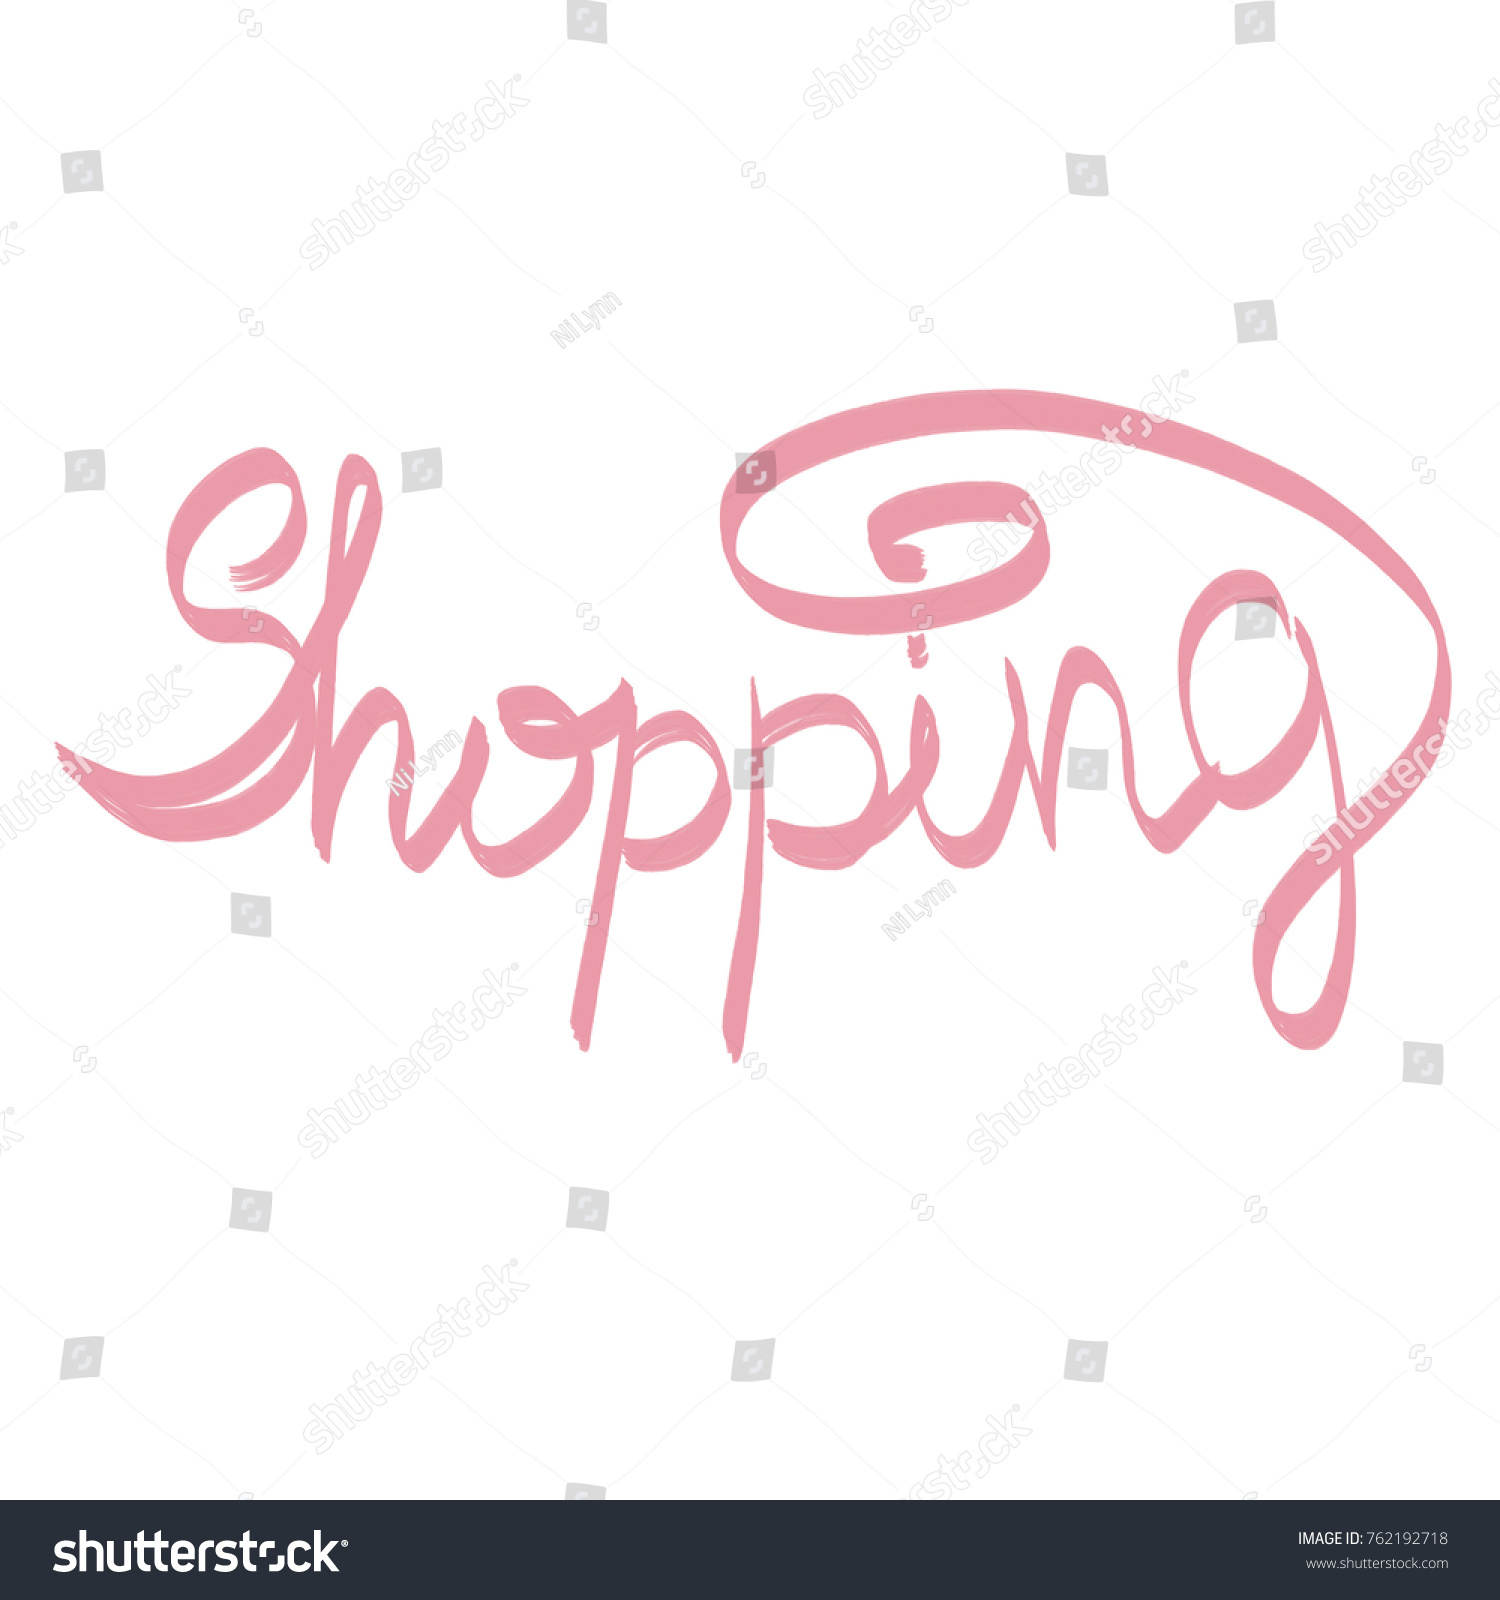 handwritten word, shopping #762192718